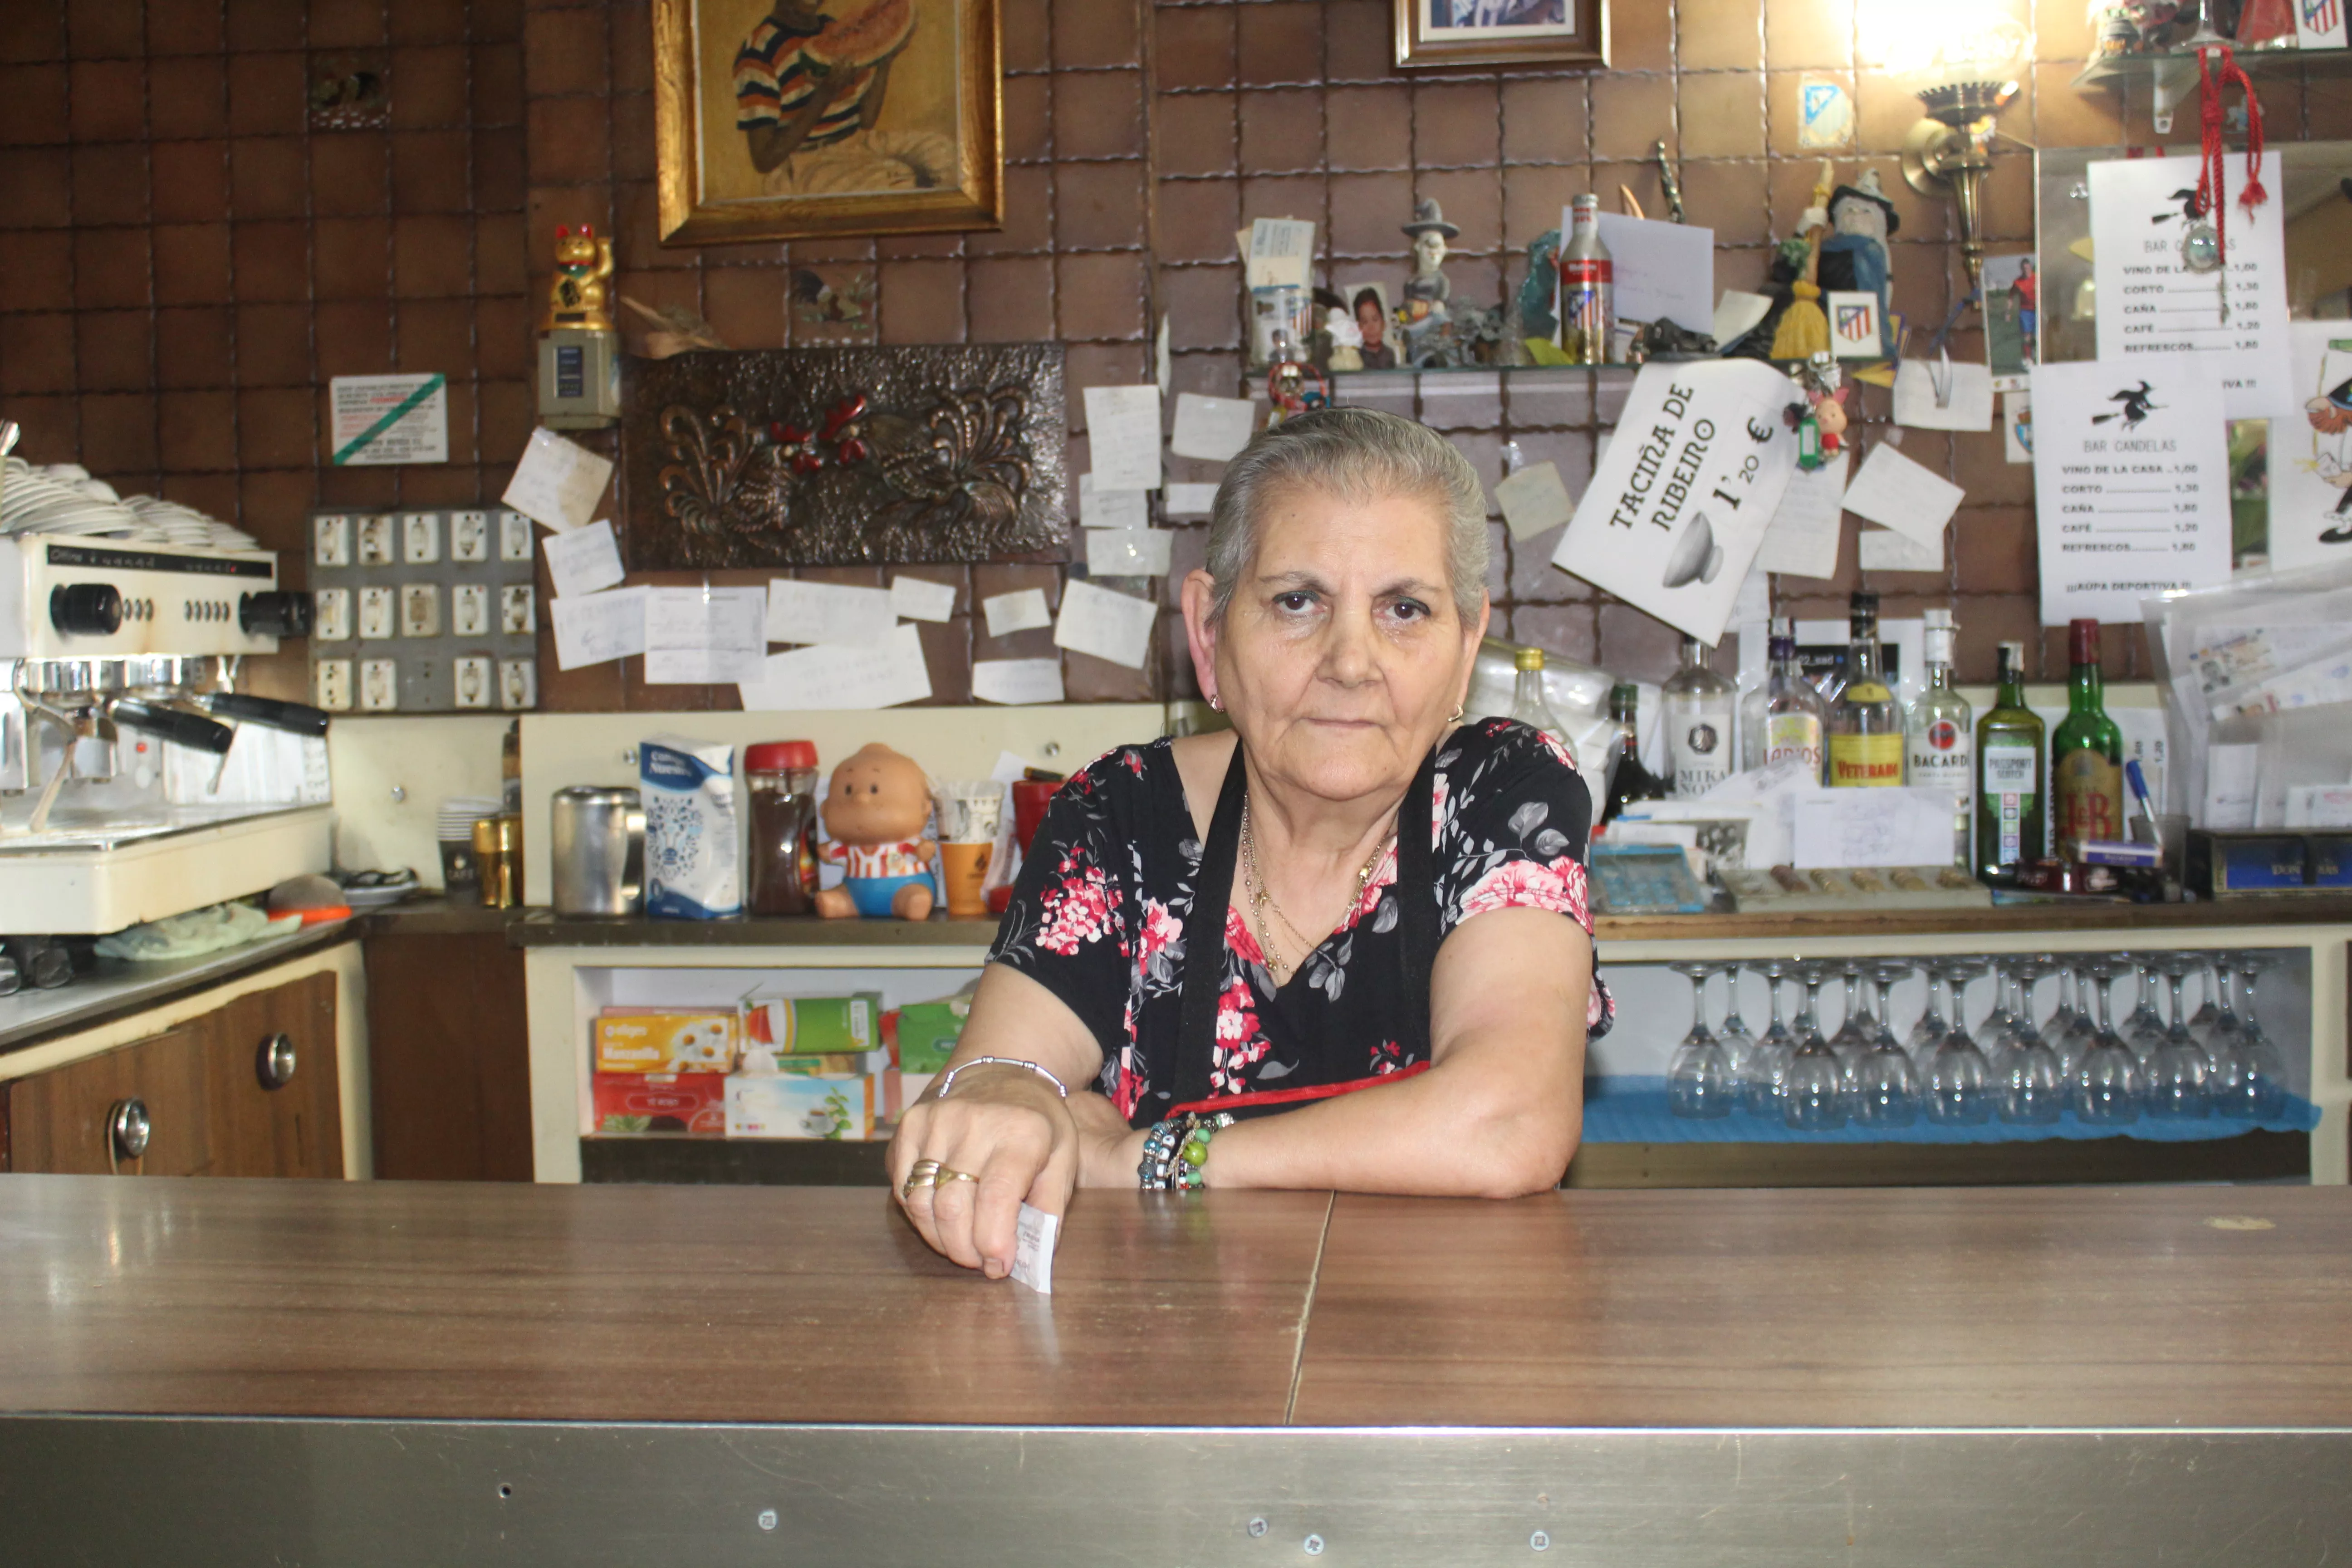 Boda de brillantes: El bar 'Candelas' cumple 75 años en Ponferrada